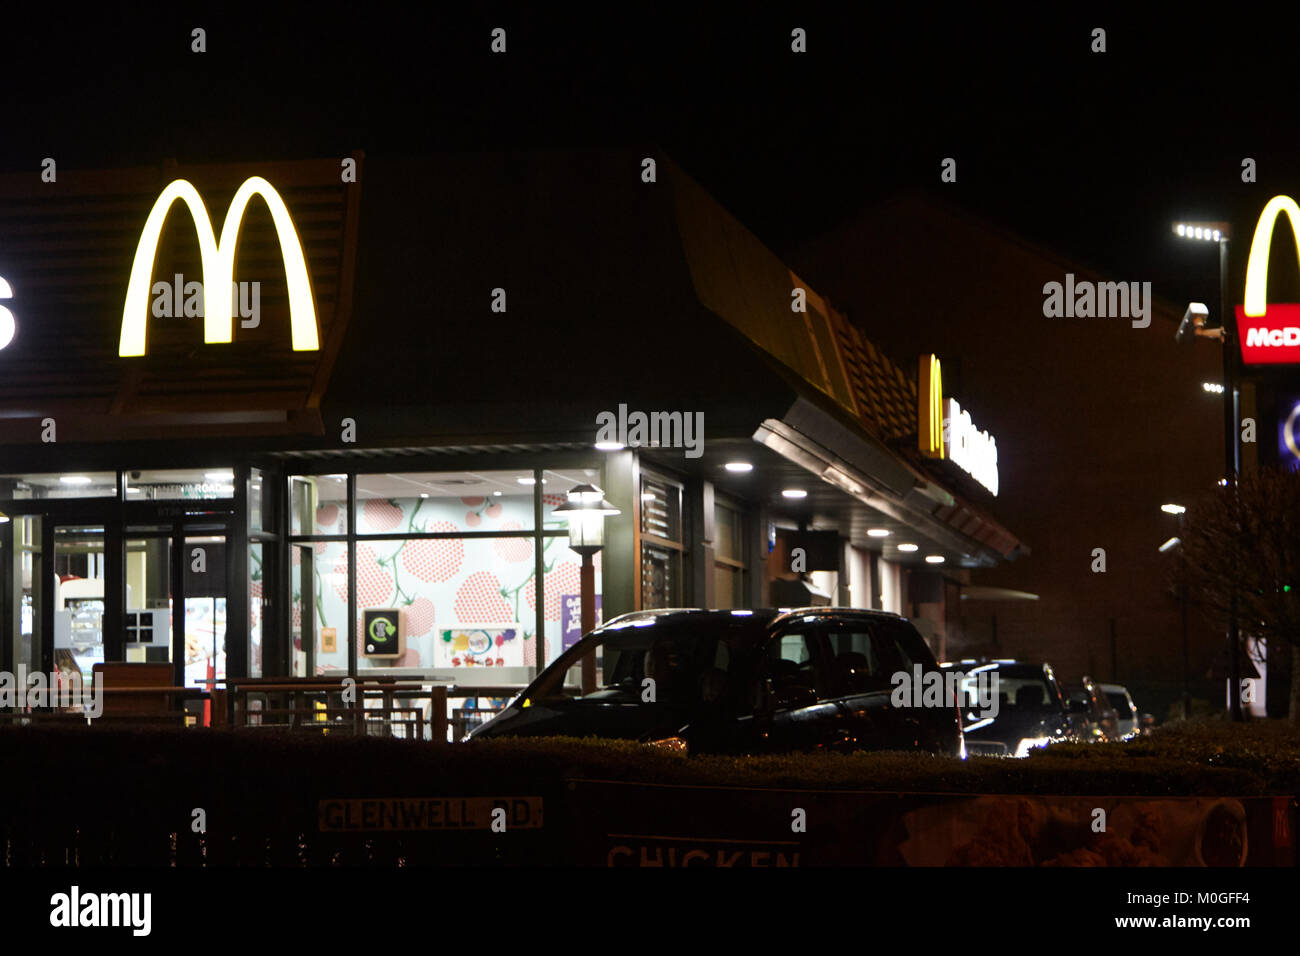 El restaurante mcdonalds conduzca a lo largo de la noche en el reino unido Foto de stock